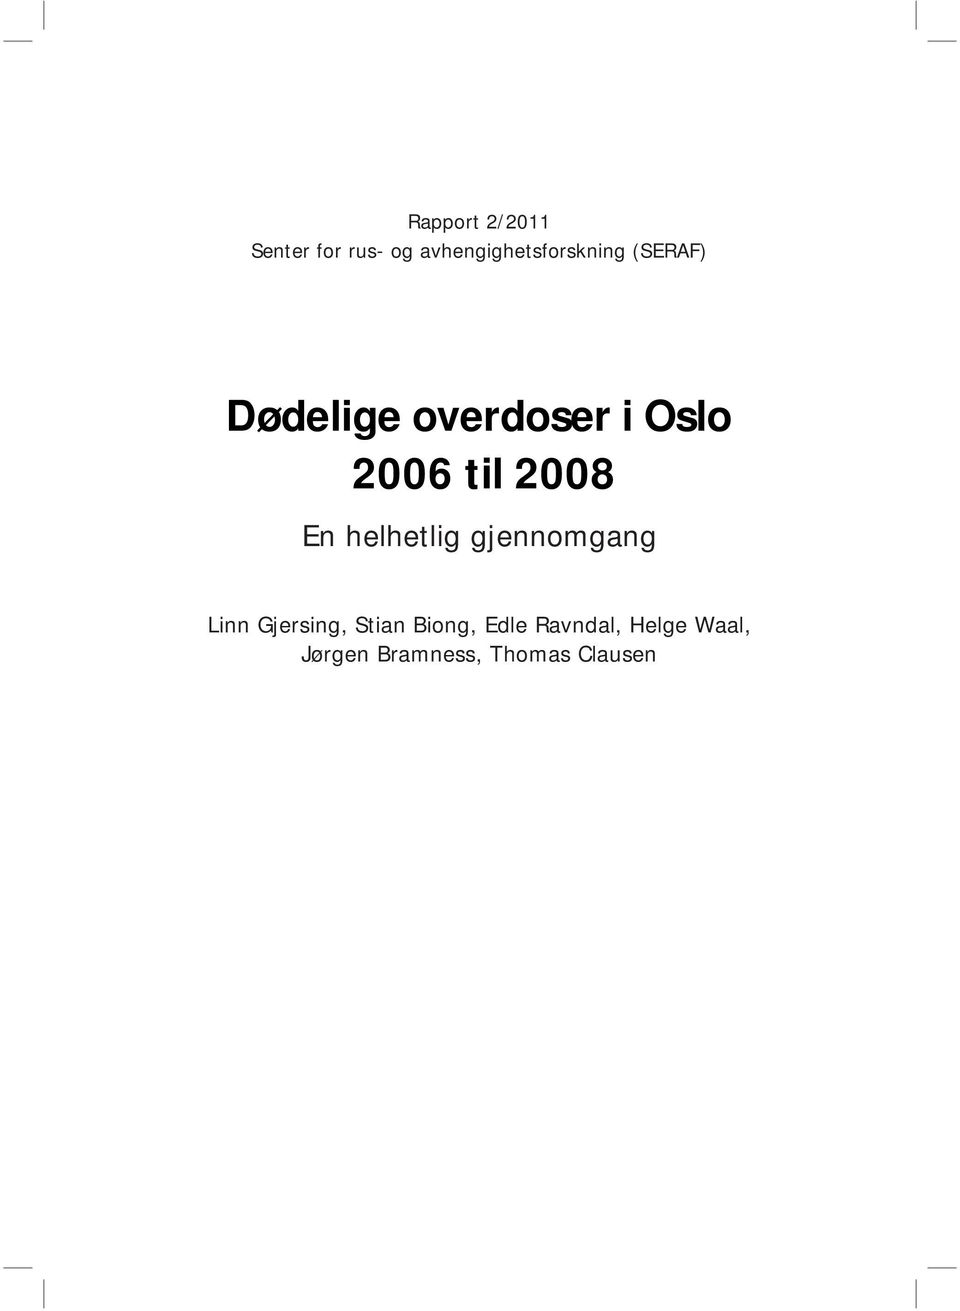 Oslo 2006 til 2008 En helhetlig gjennomgang Linn